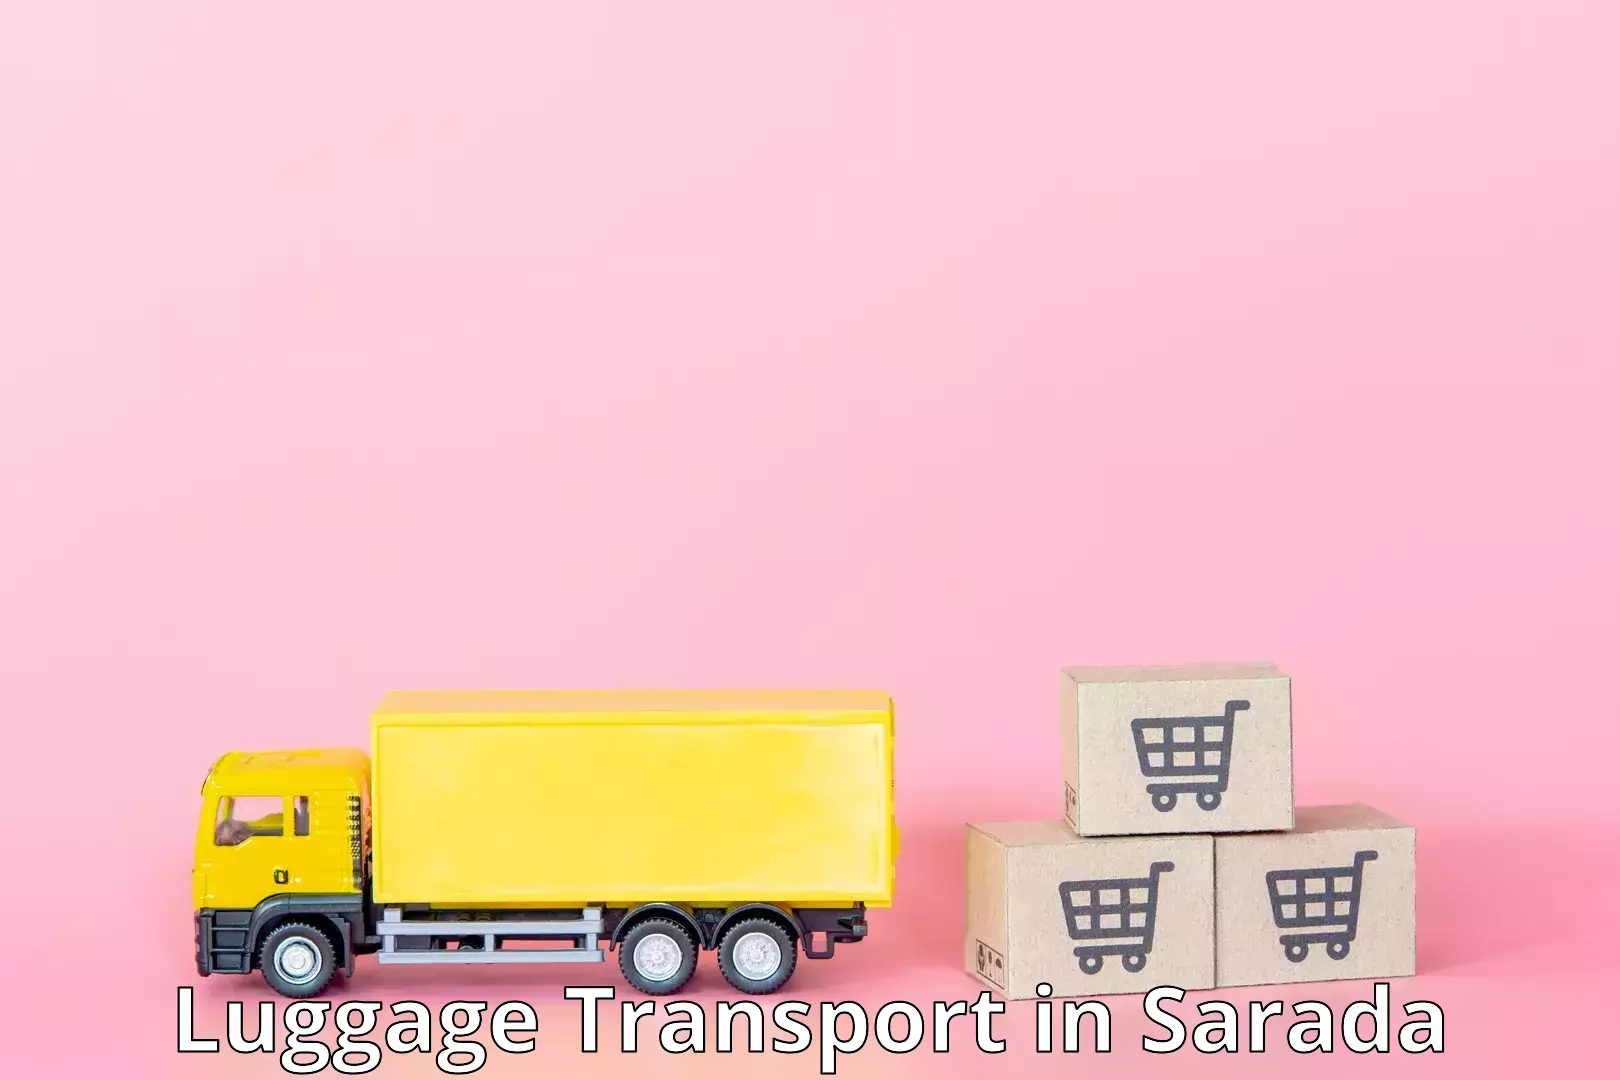 Luggage shipping service in Sarada